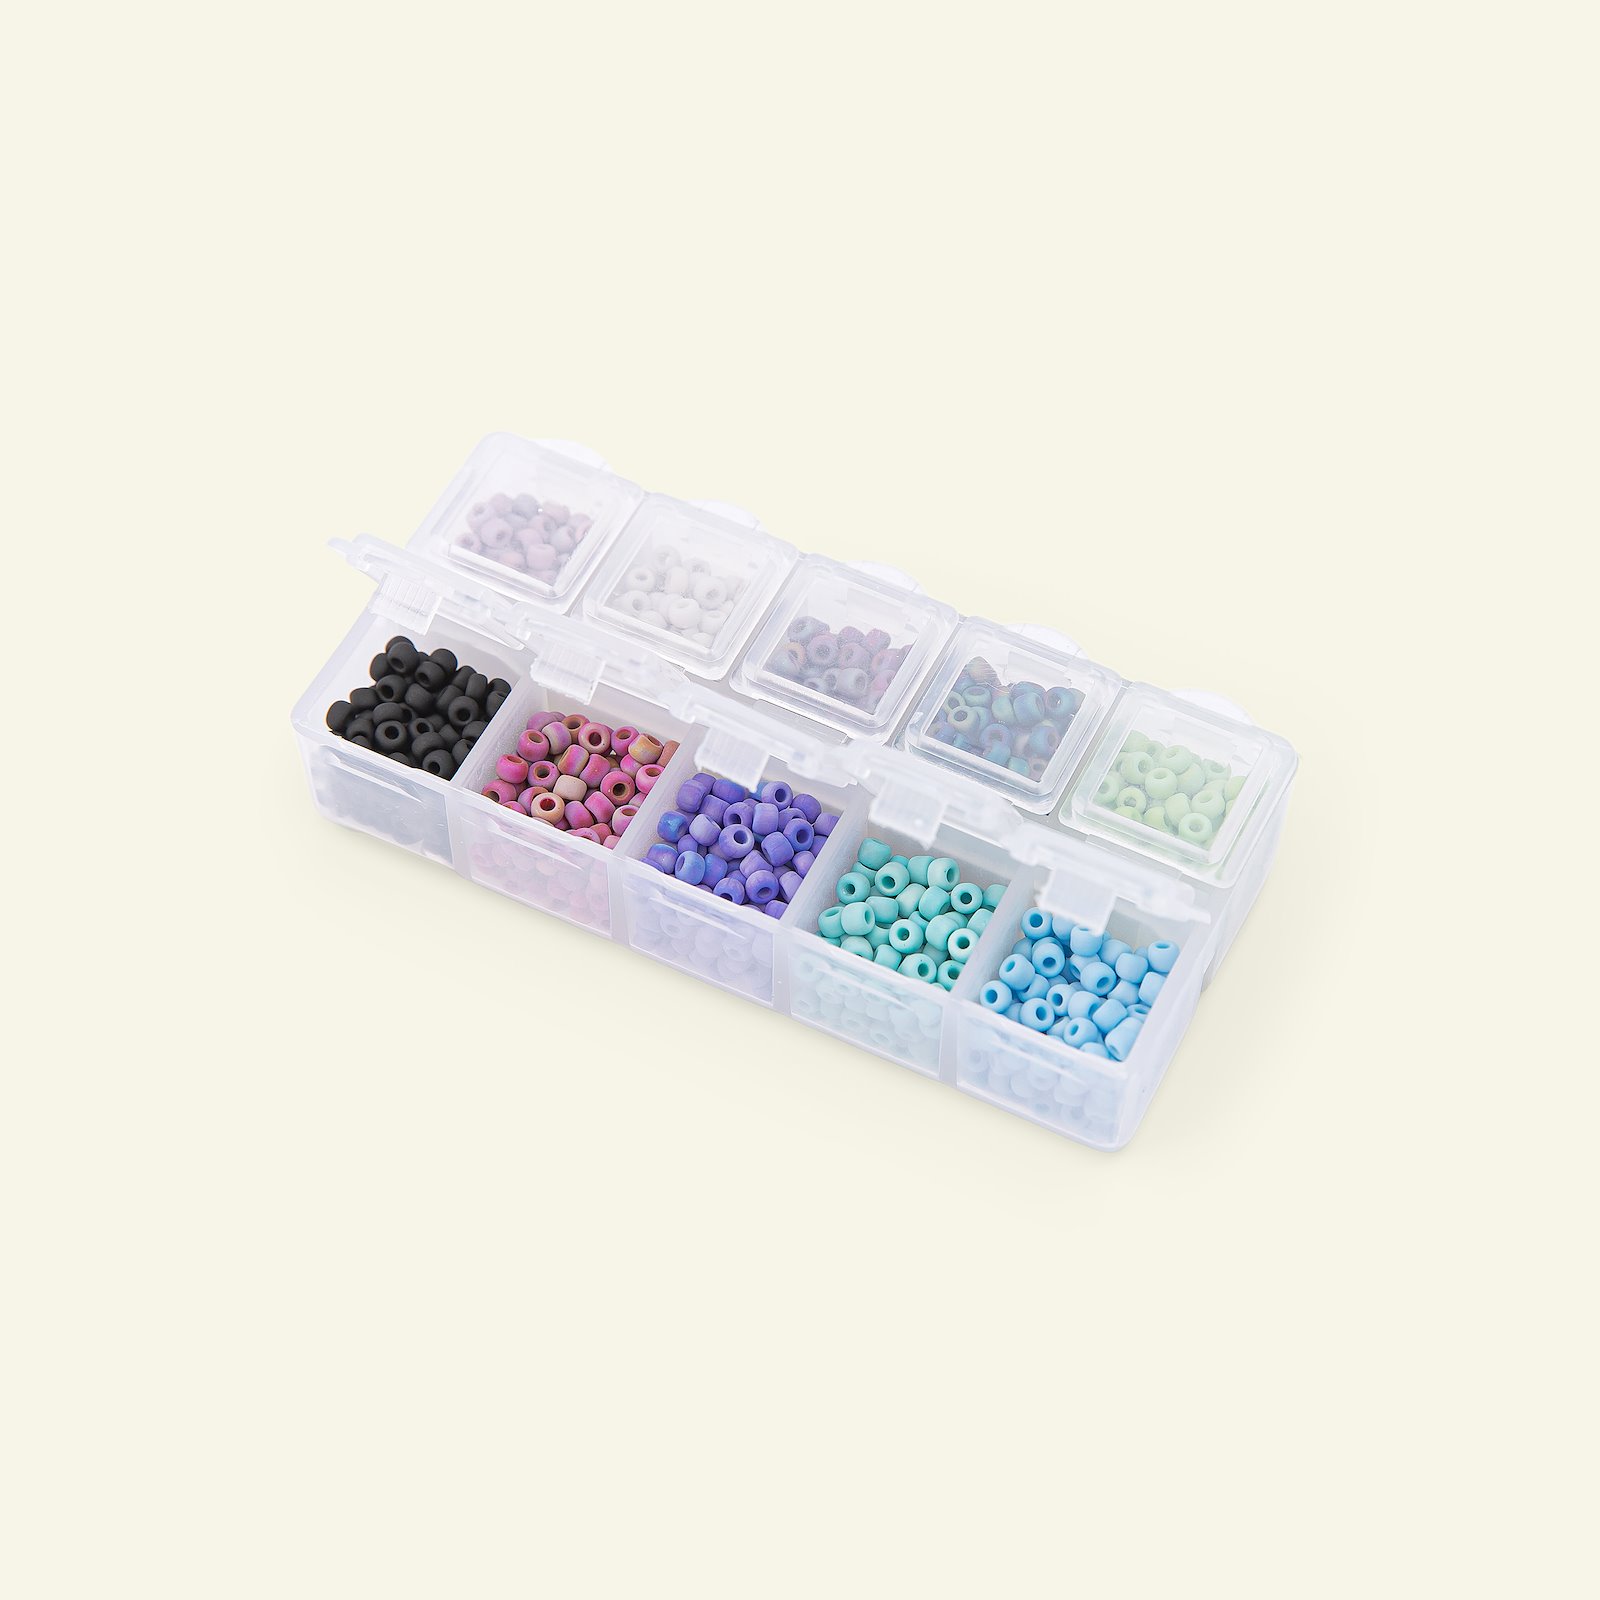 Matsuno glass bead round 8/0 10 col. 40g 47197_pack_c